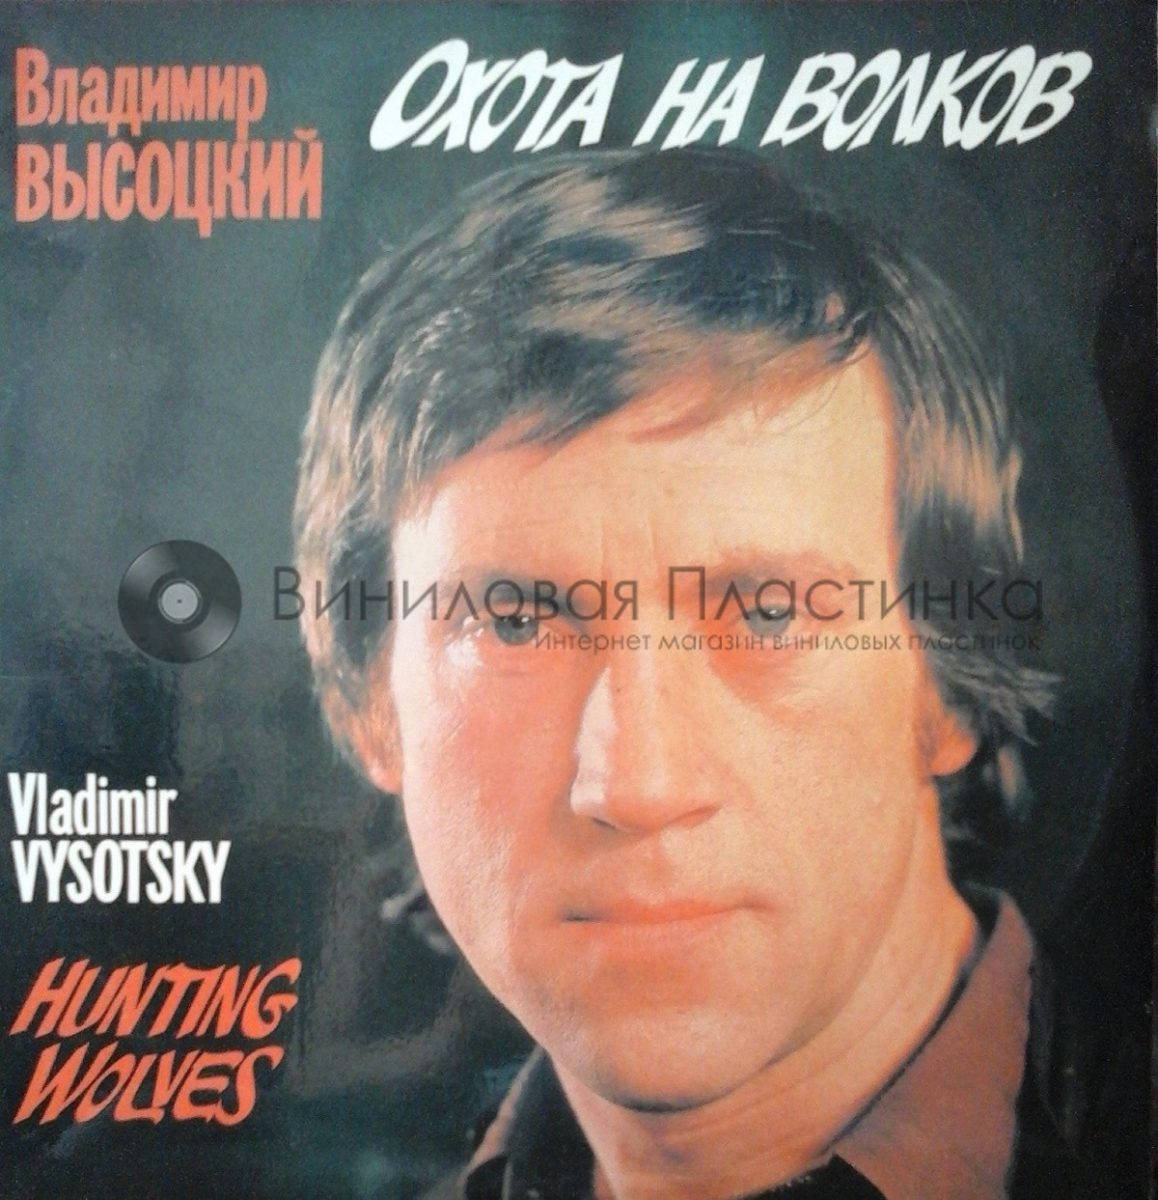 Владимир Высоцкий Vladimir Vissotsky RCA 1977